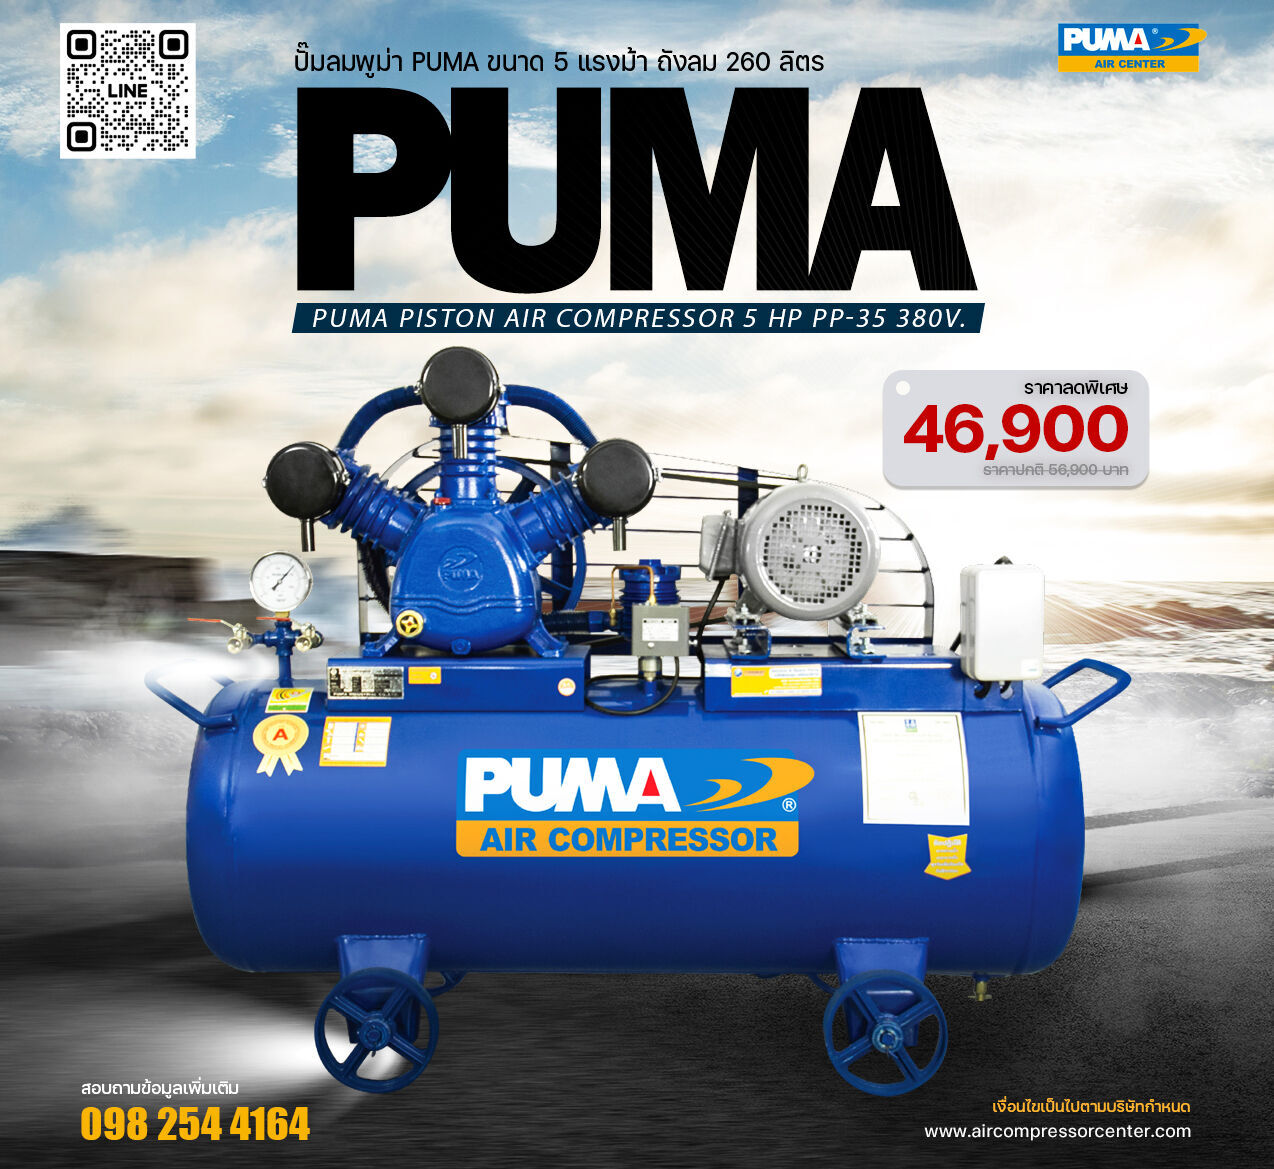 โปรโมชั่นสุดพิเศษ!! ปั๊มลมพูม่า PUMA PP35-PPM380V ปั๊มลมลูกสูบ ขนาด 3 สูบ 5 แรงม้า 260 ลิตร PUMA พร้อมมอเตอร์ PUMA ไฟ 380V ส่งฟรี กรุงเทพฯ-ปริมณฑล รับประกัน 1 ปี
